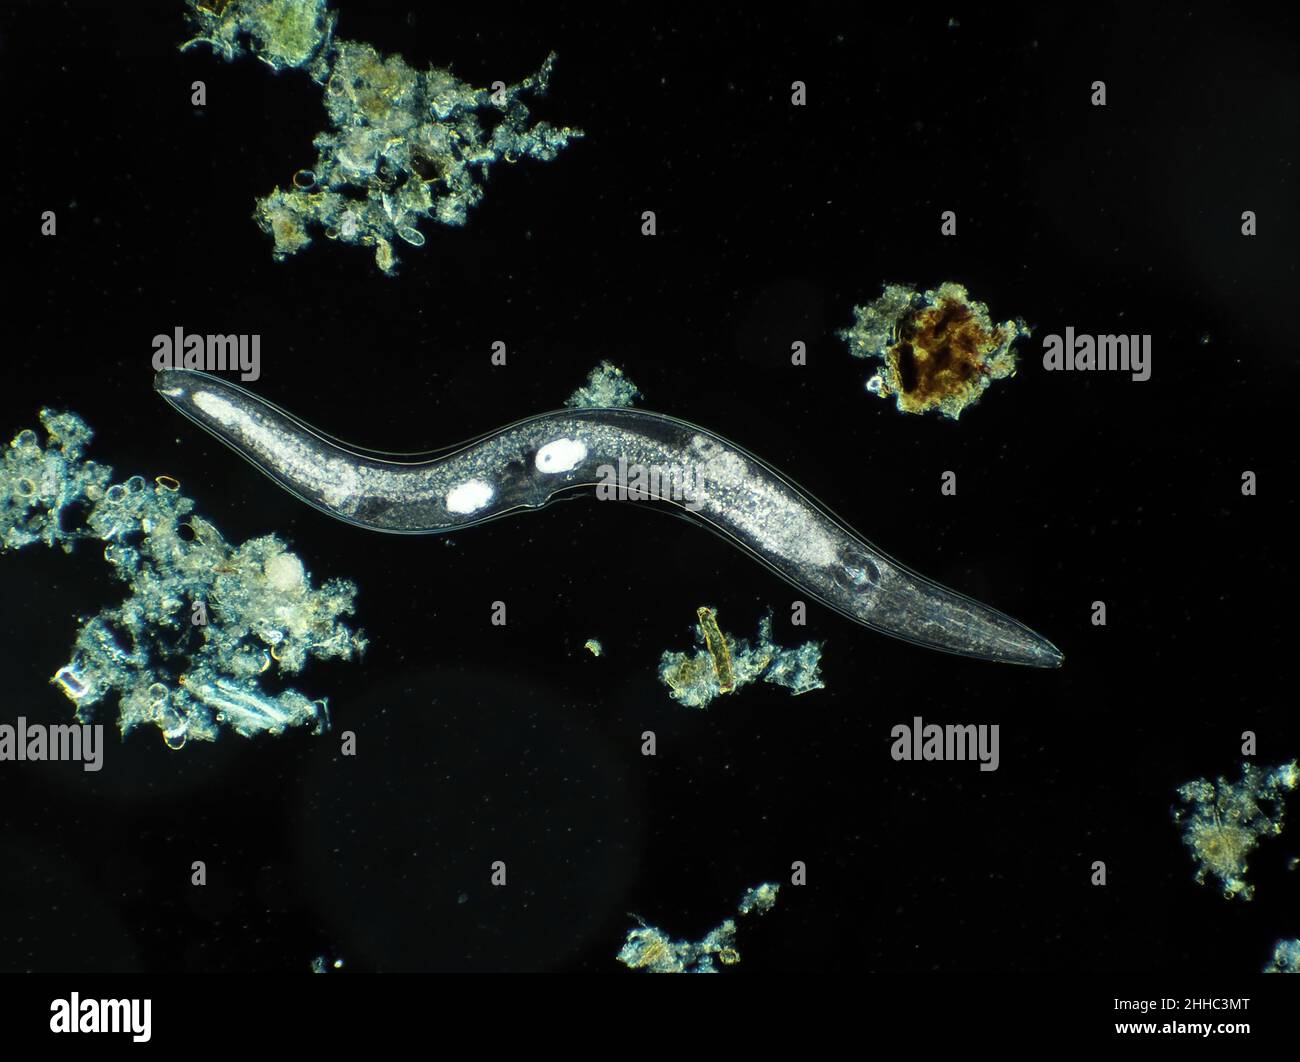 Verme nematodiche a vita libera microscopiche da terreno giardino, possibilmente Panagrellus sp., micrografia a campo scuro, campo di vista orizzontale è di circa 1,1mm Foto Stock